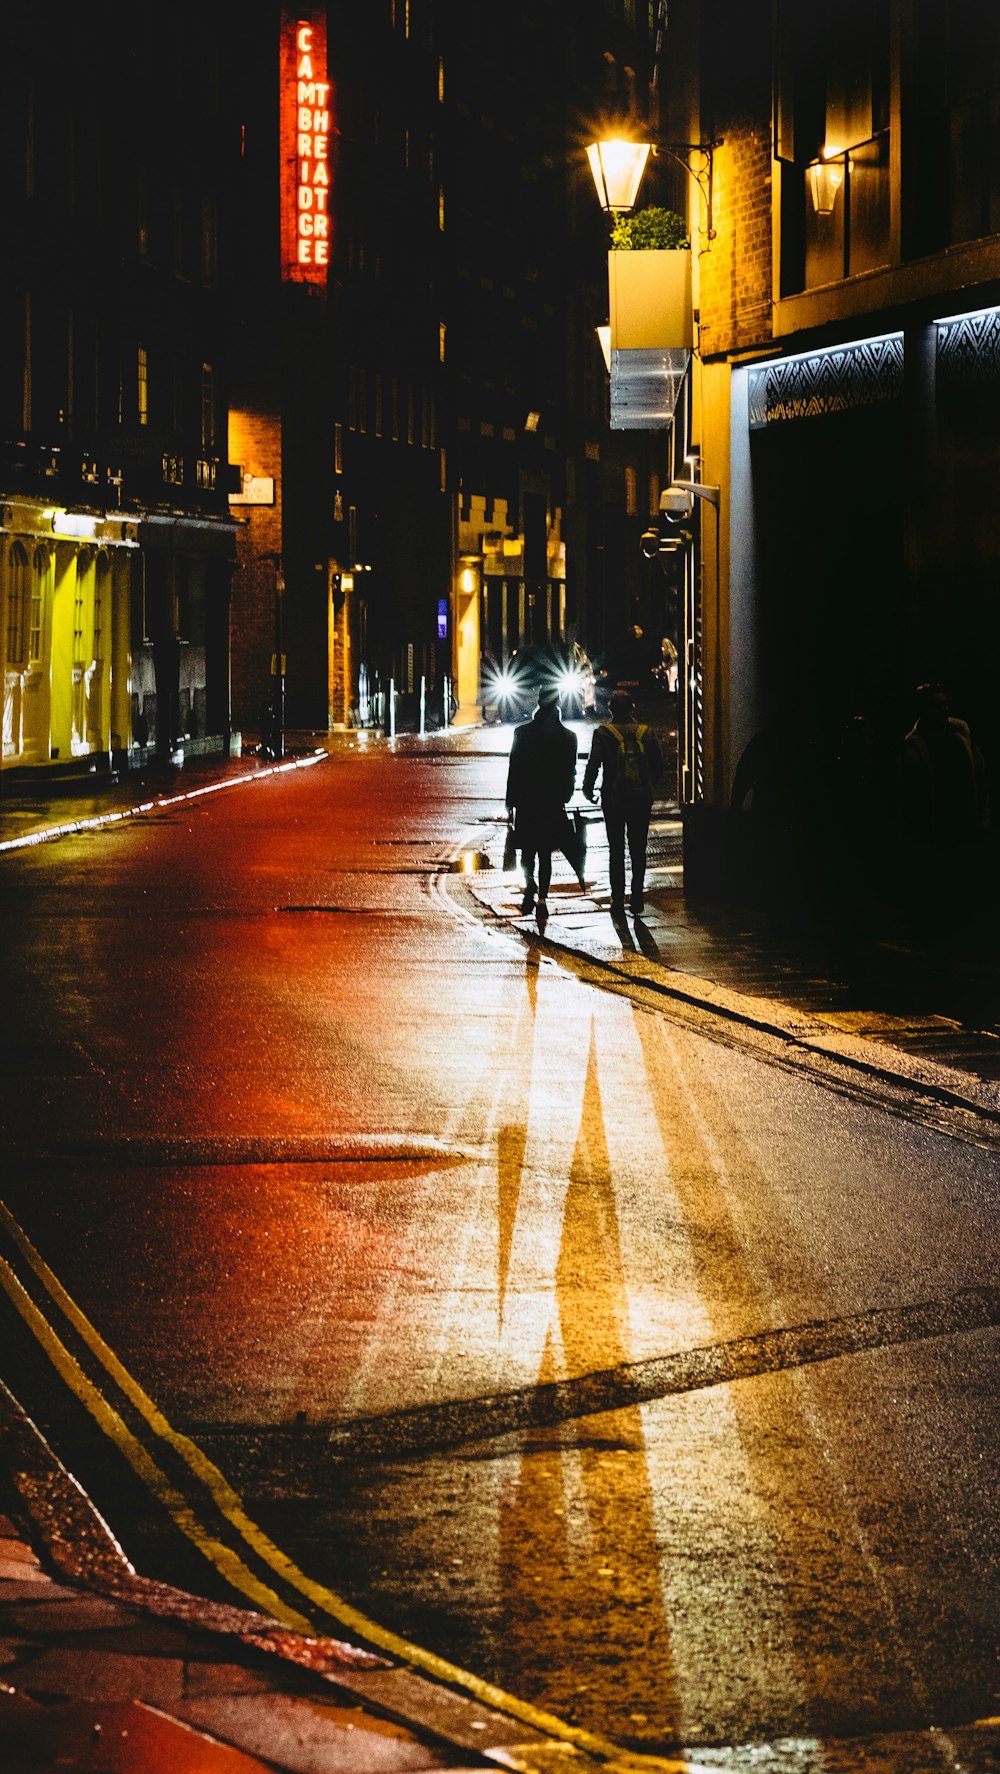 zwei Personen, die nachts auf der Straße neben dem Gebäude spazieren gehen